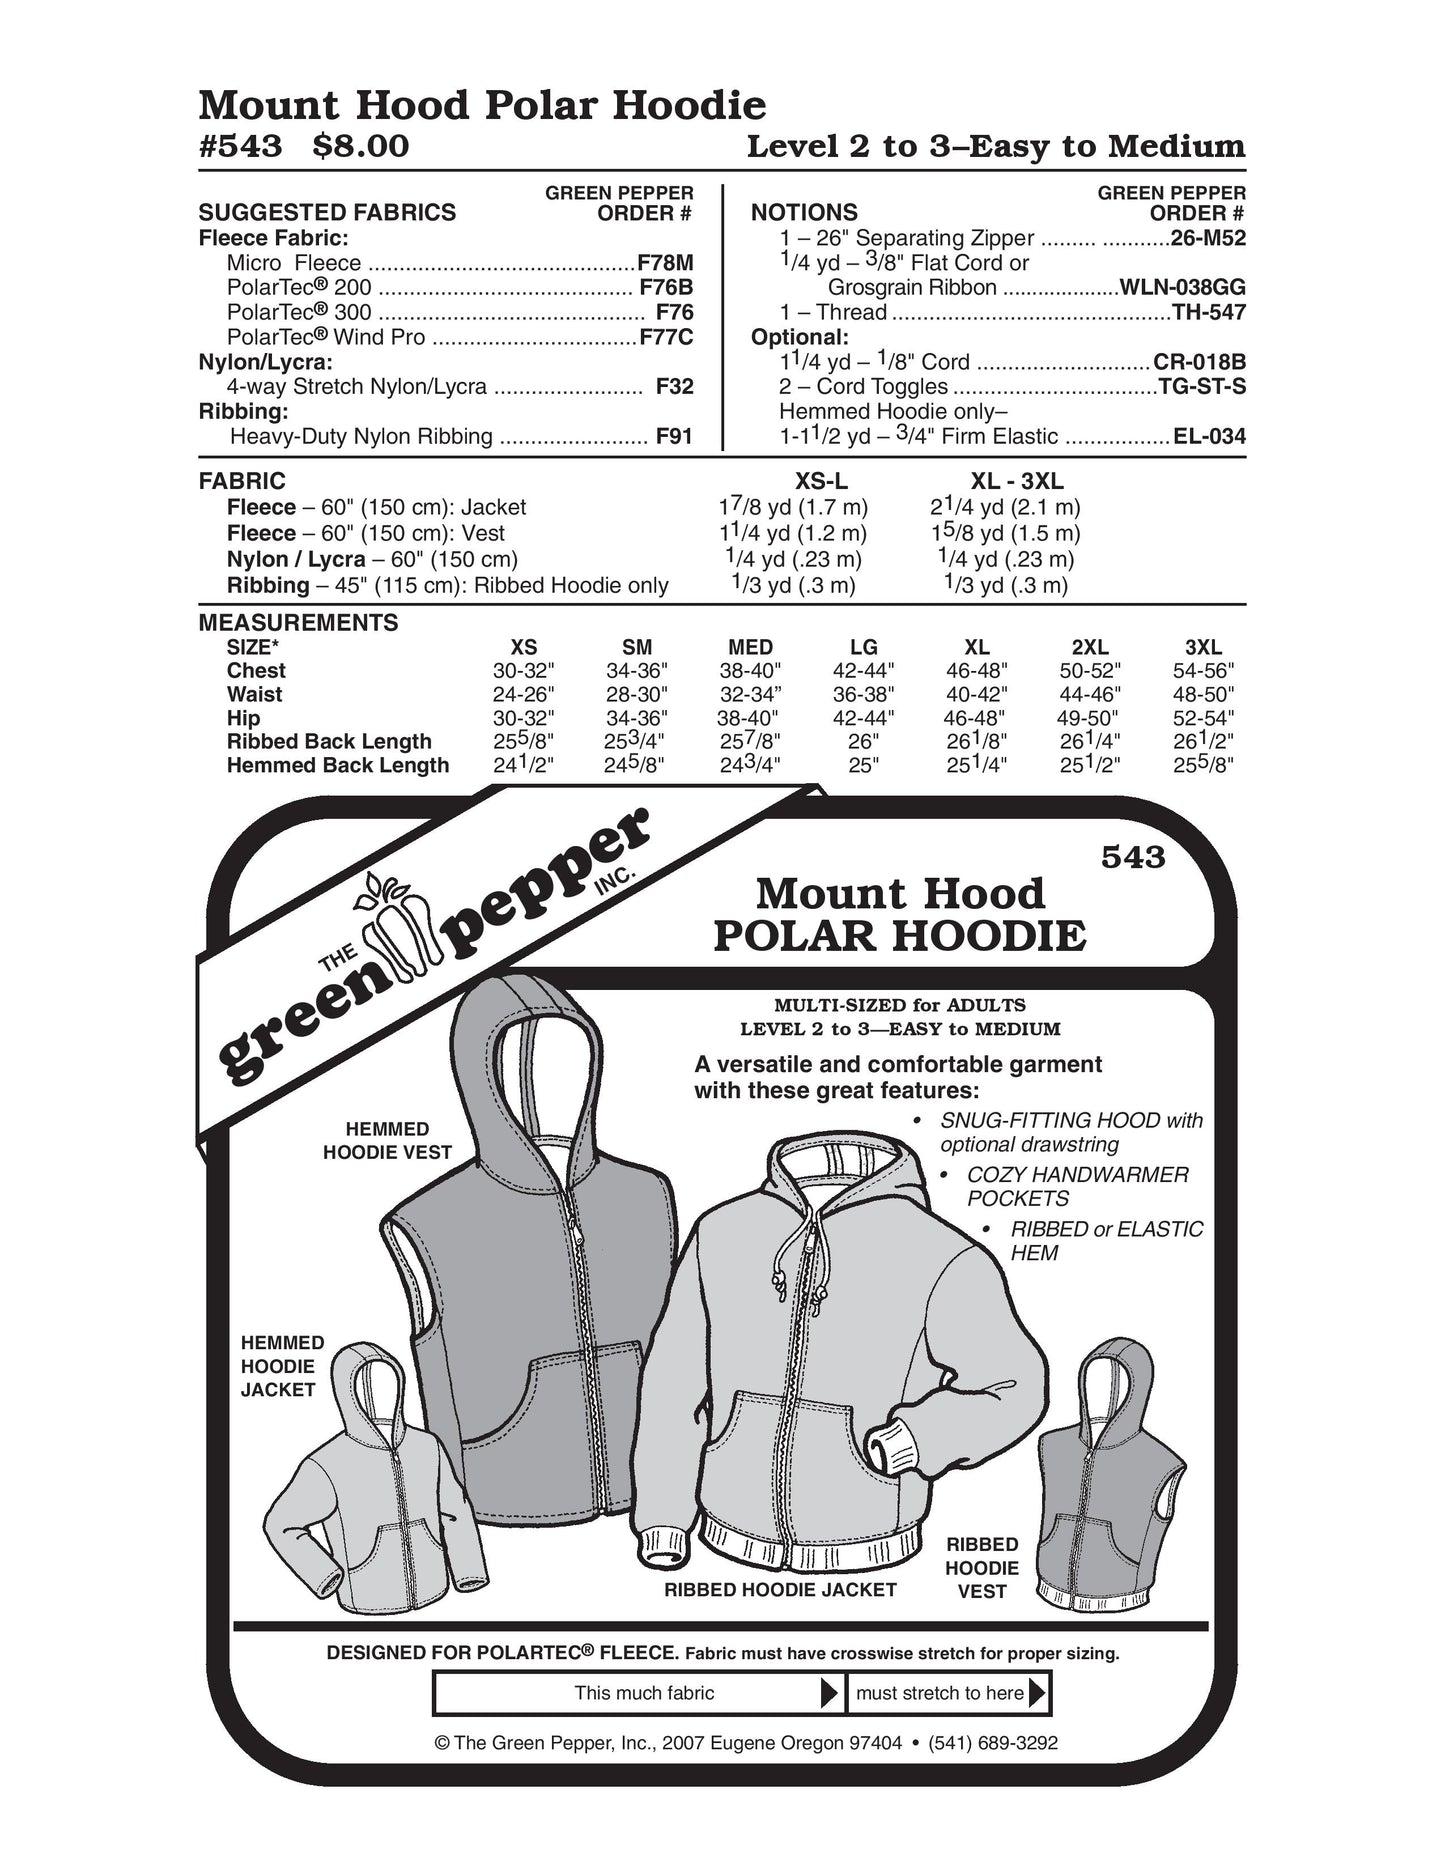 Mount Hood Polar Hoodie Pattern (Sold per Each)